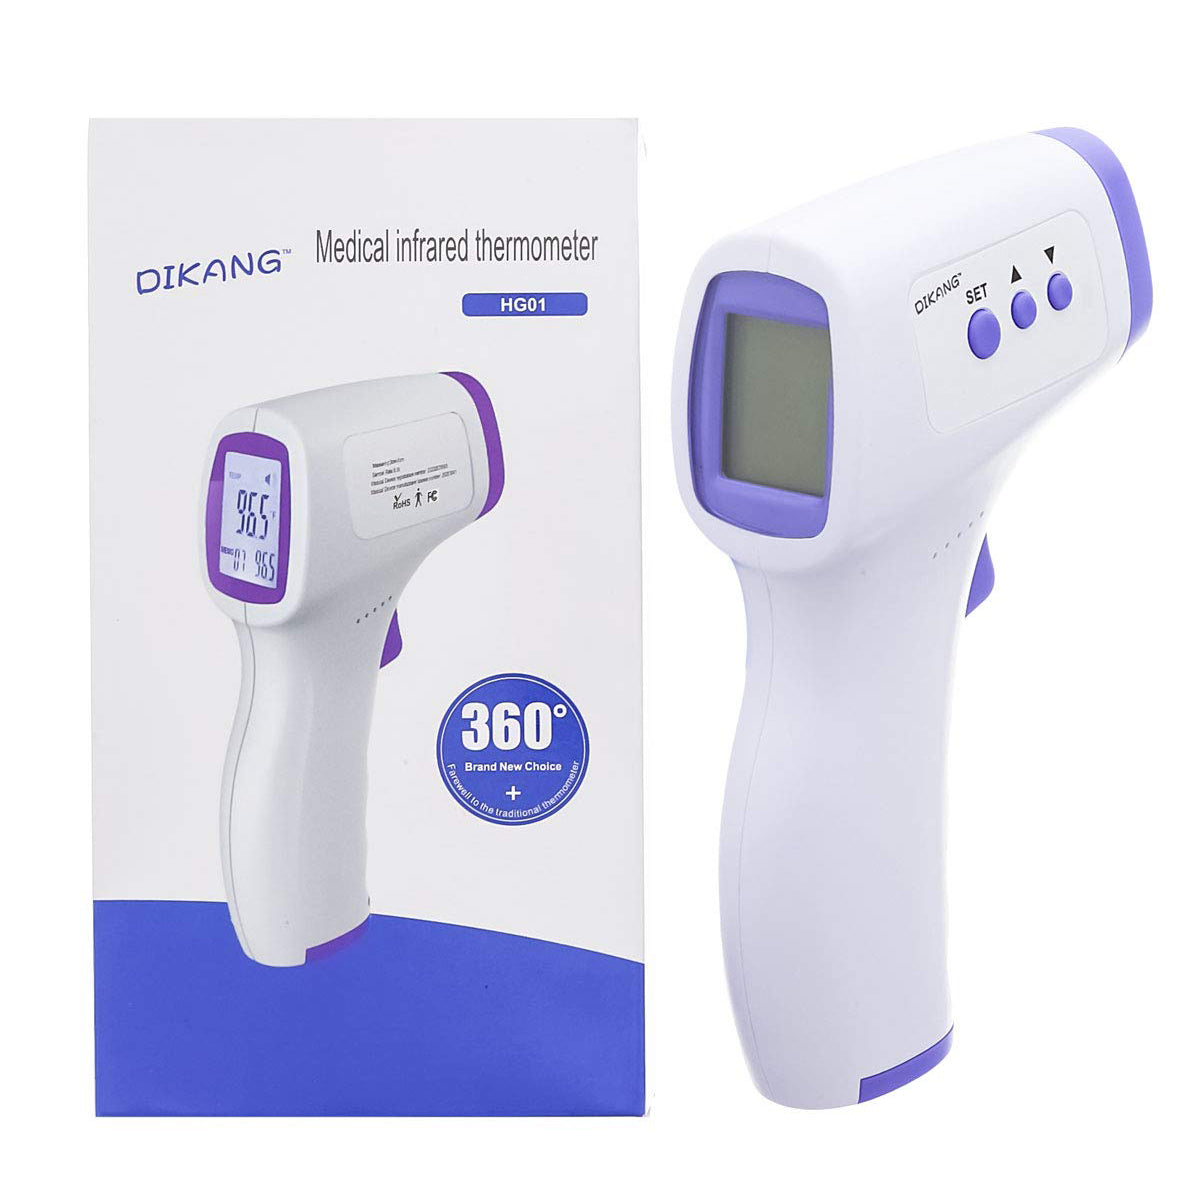 Medical Infrared Thermometer - Dikang